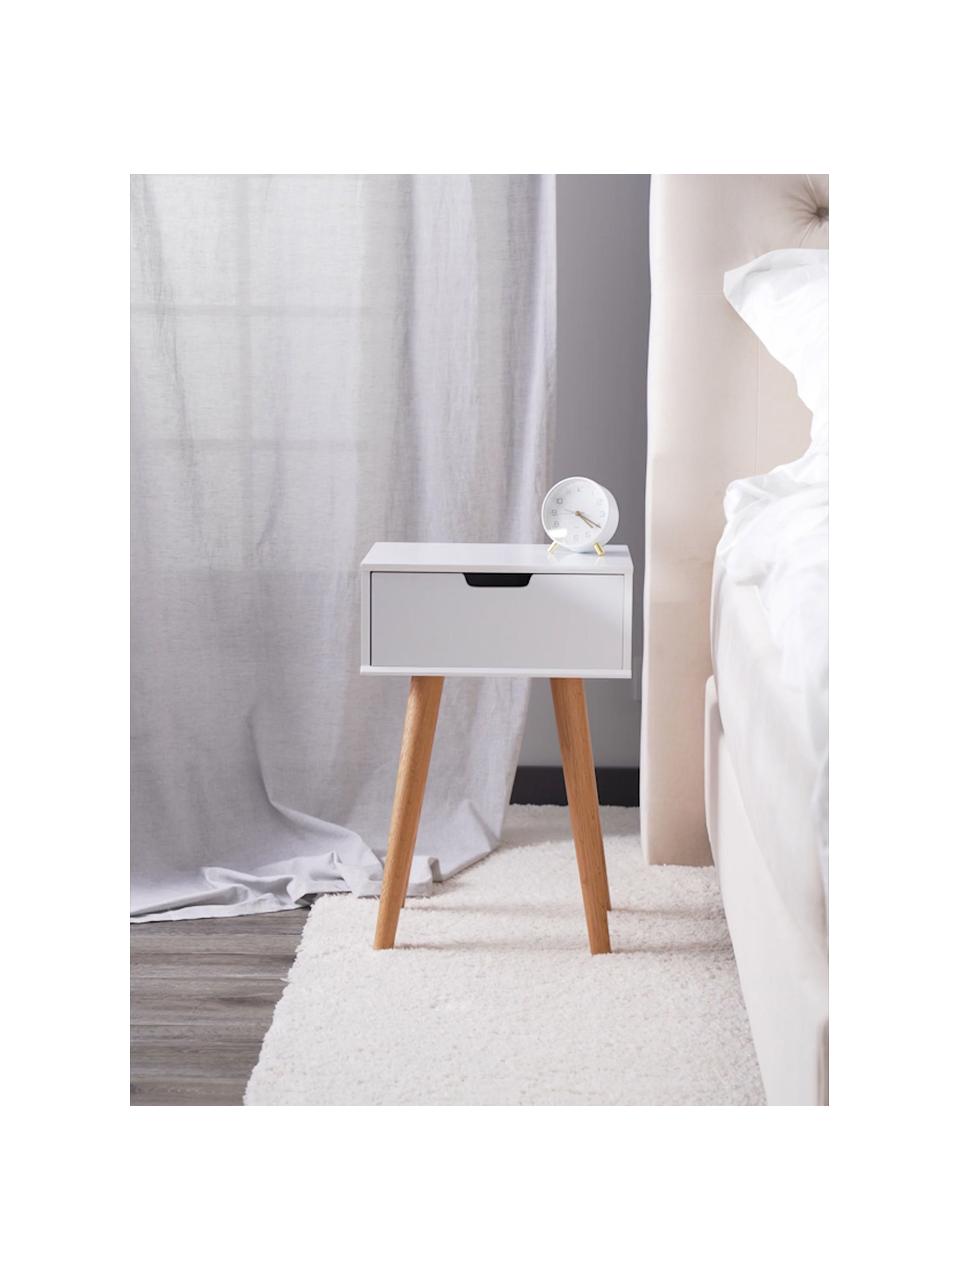 Nachttisch Mitra mit Schublade, Beine: Eichenholz, Weiß, Eichenholz, B 40 x H 62 cm